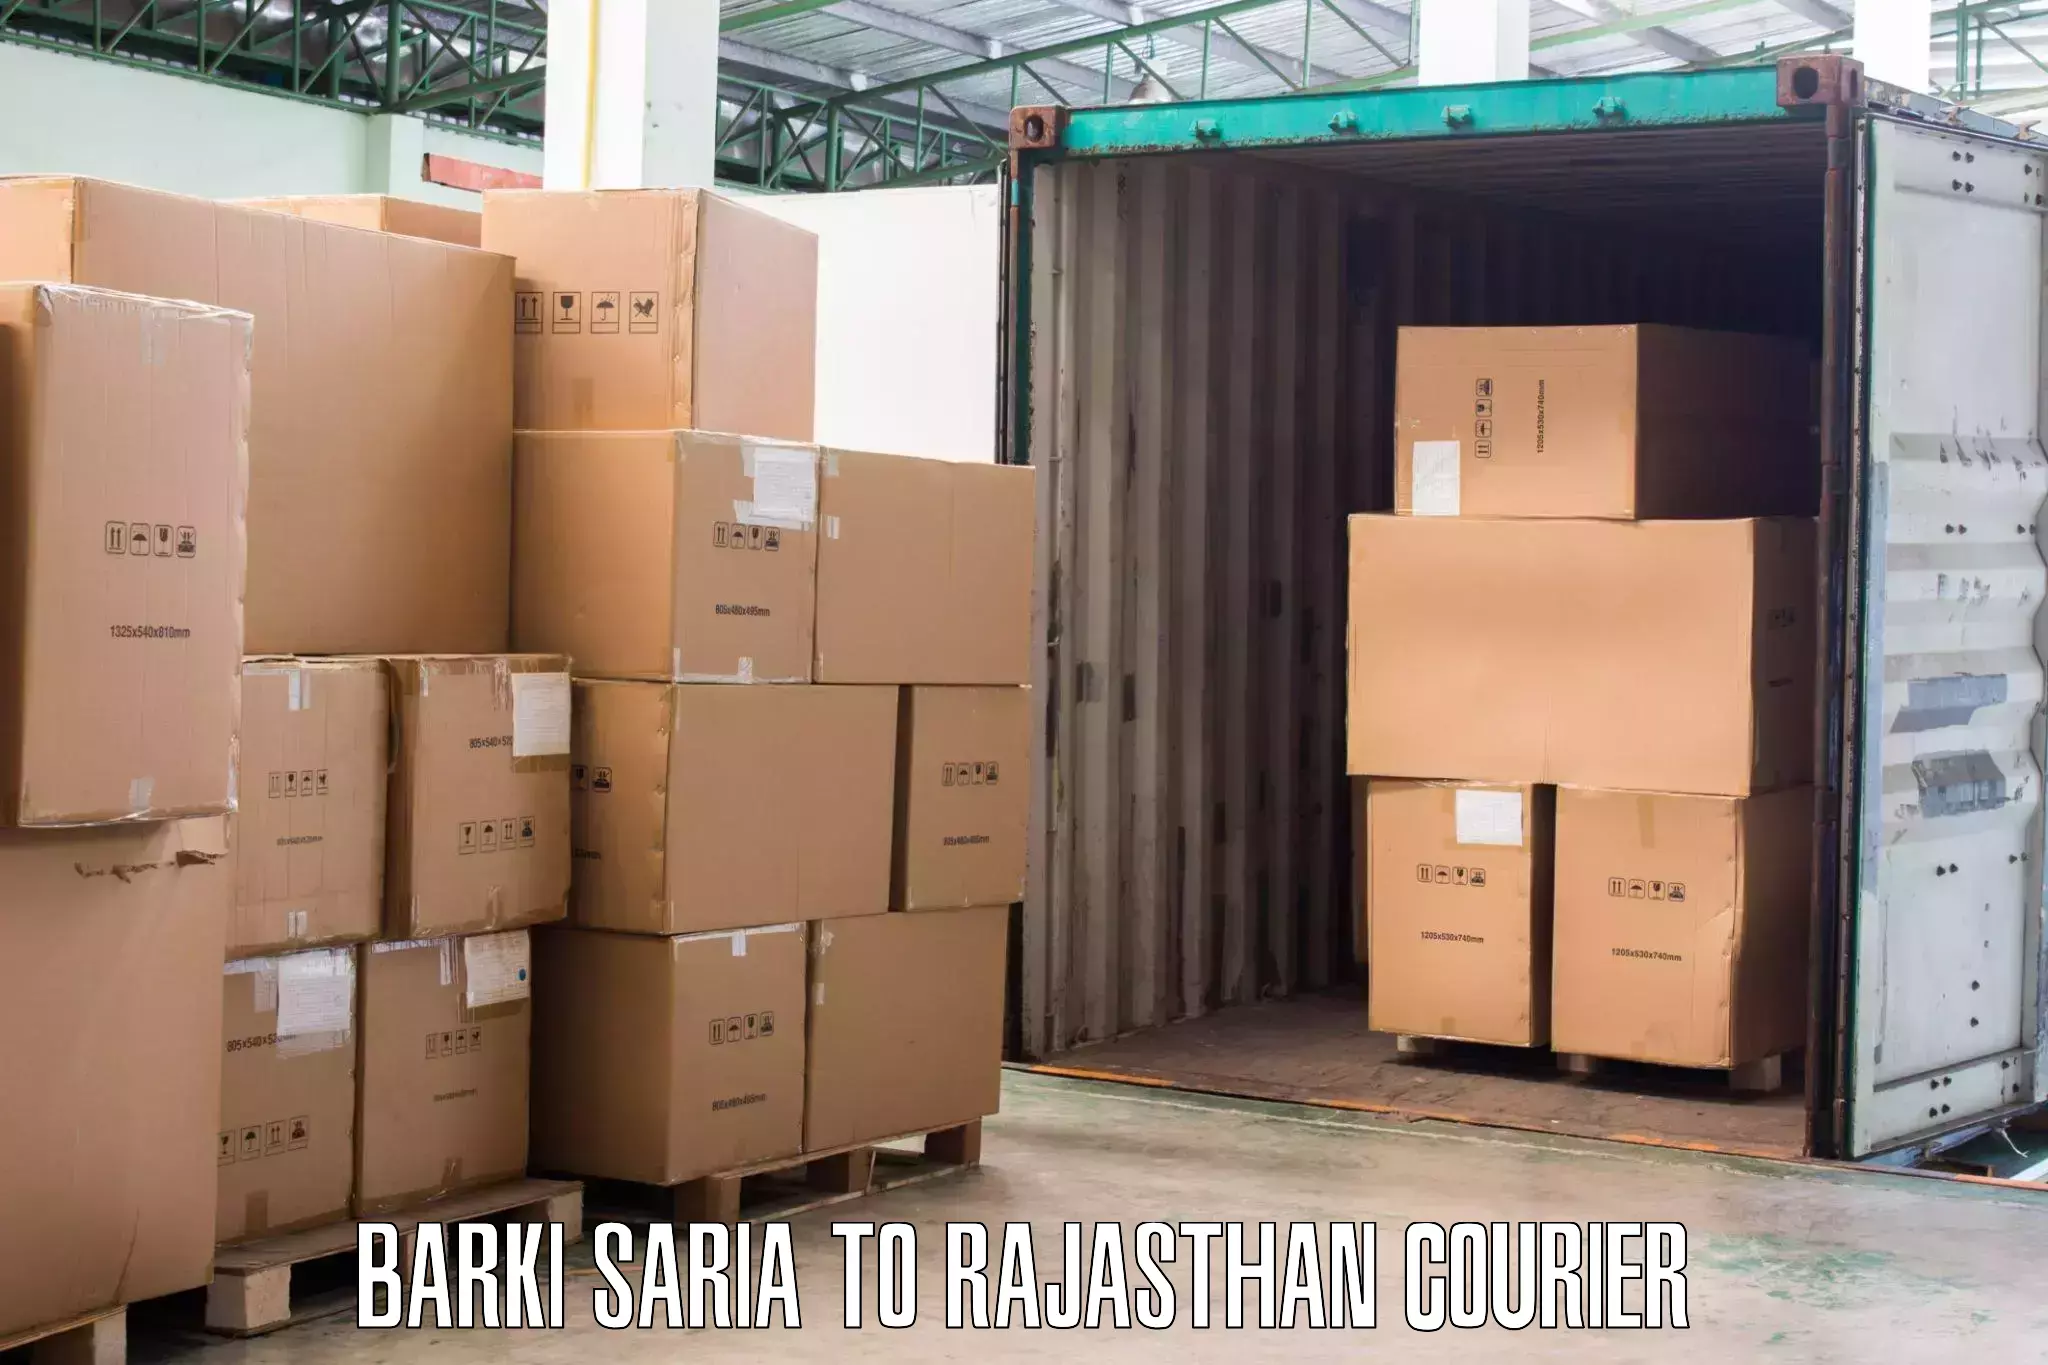 Safe home goods transport Barki Saria to Anupgarh